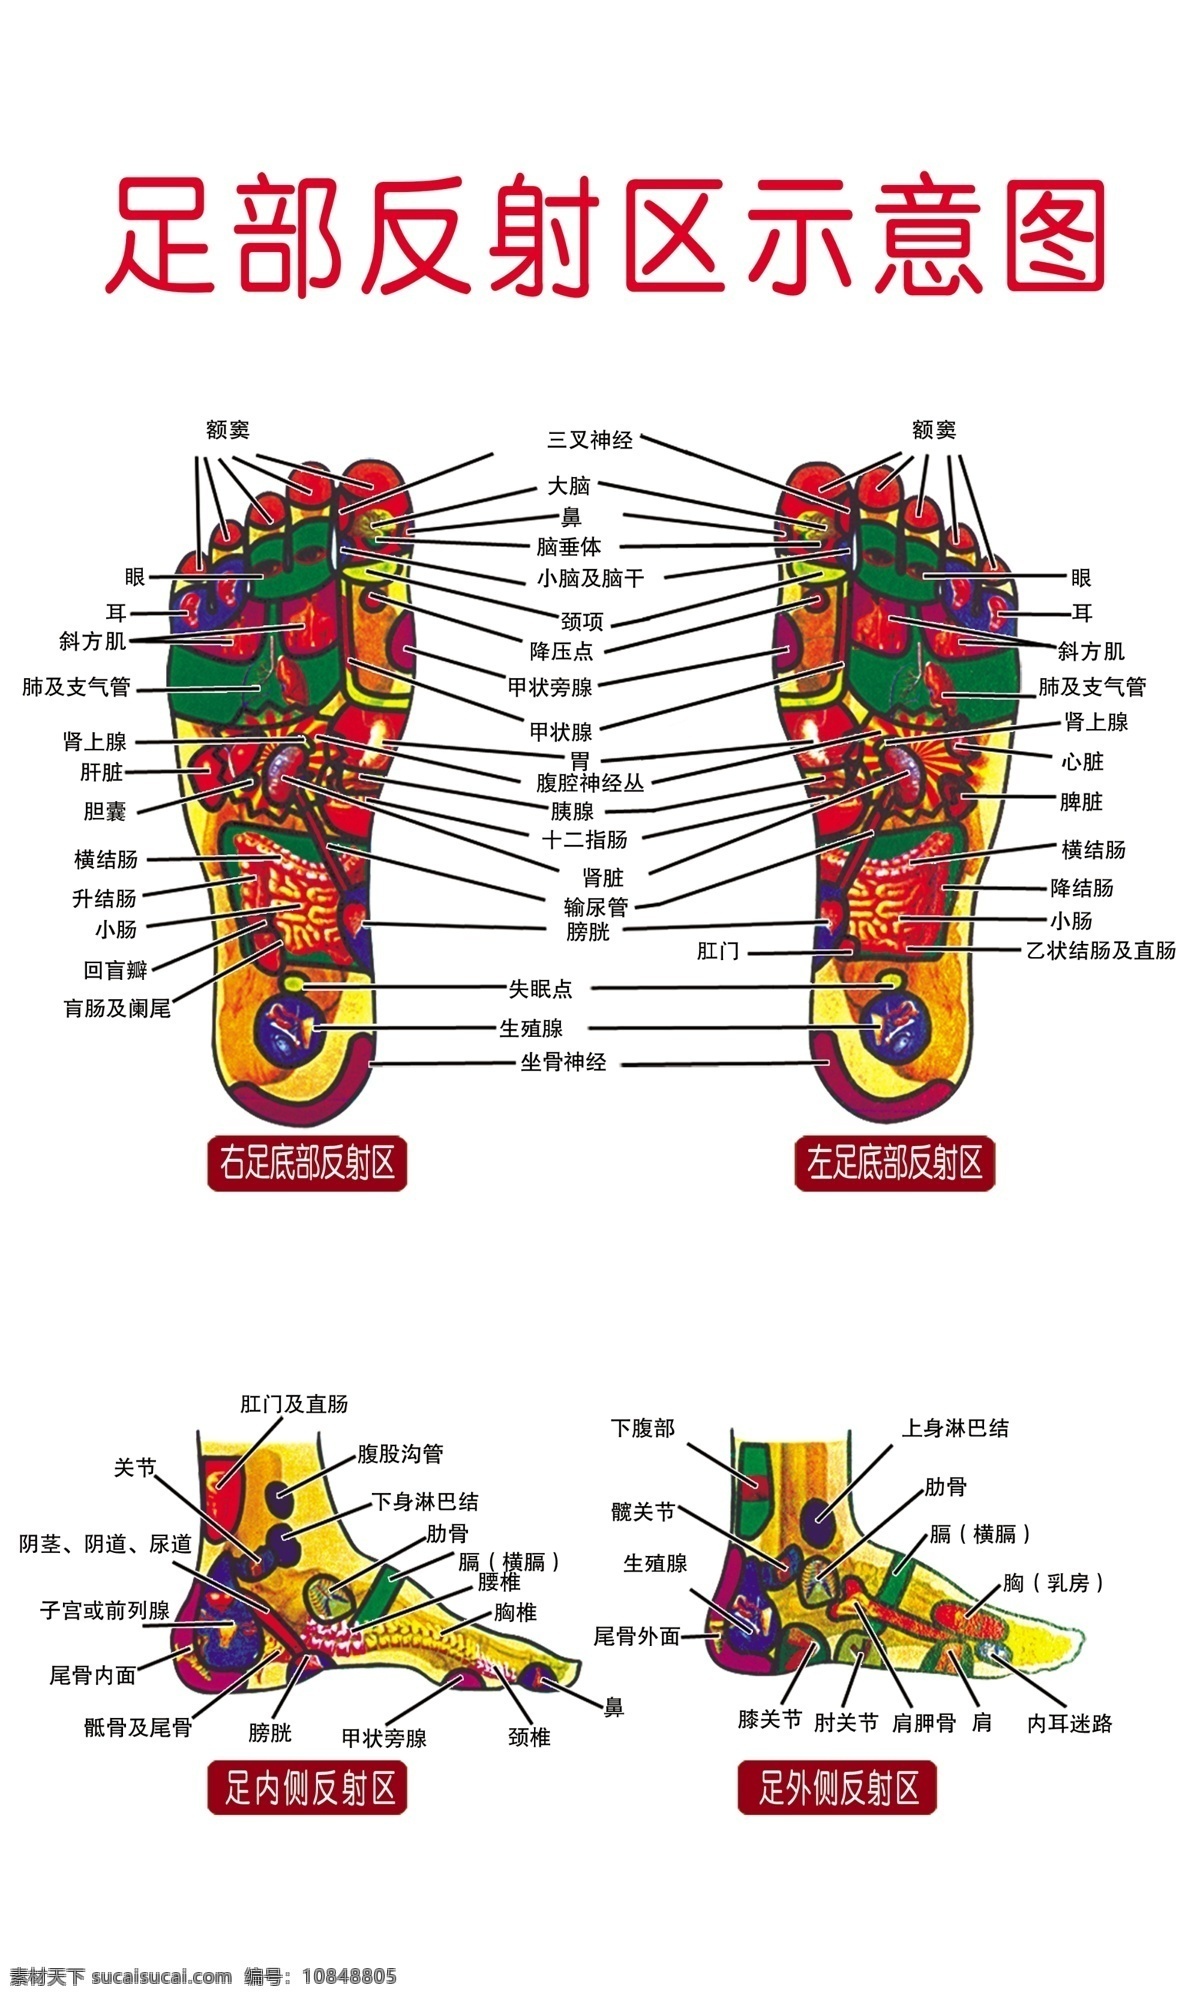 足部穴位图 足部穴位 穴位 足部 脚部穴位 中医 分层